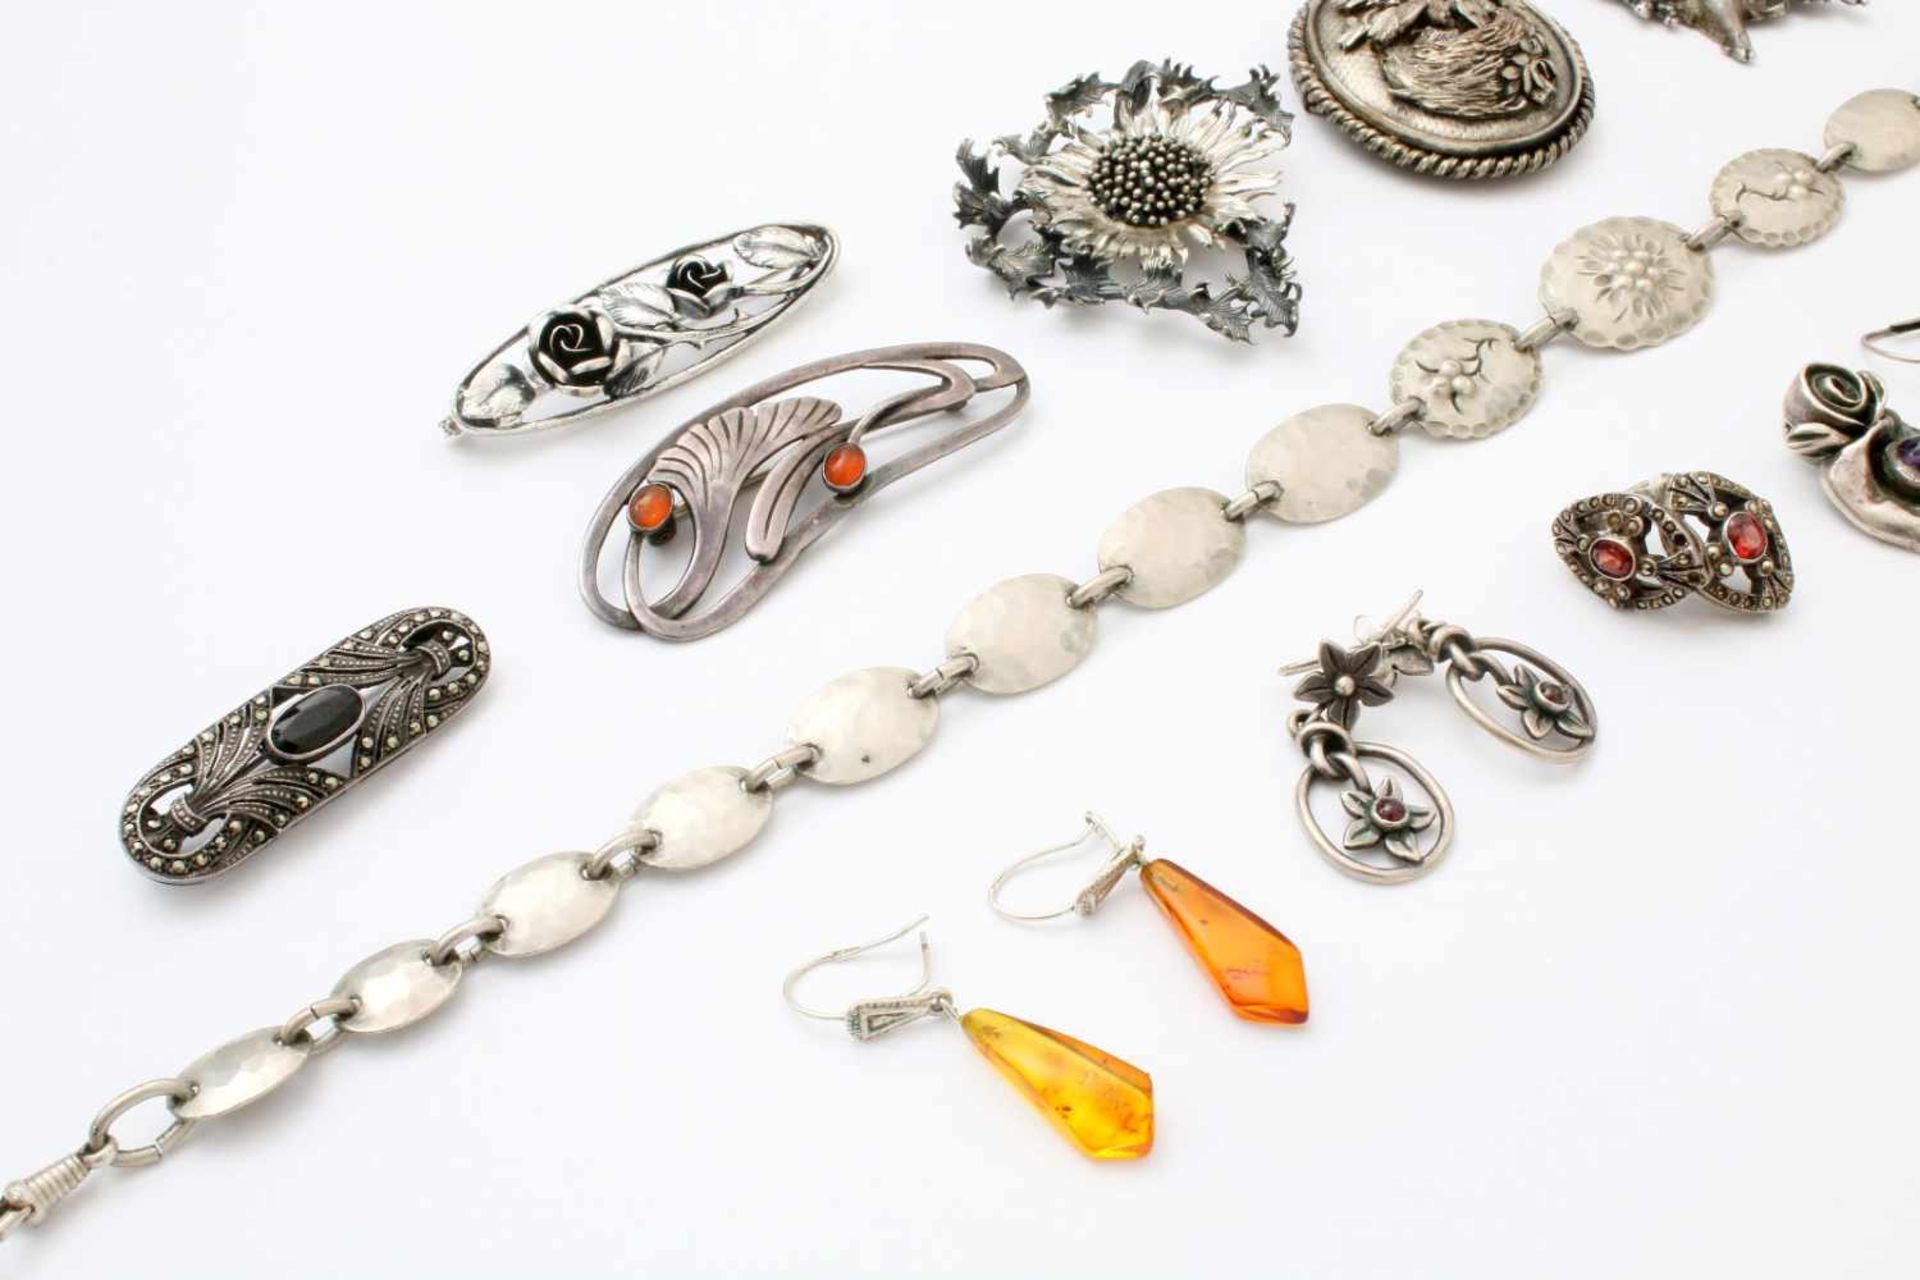 Sammlung Silberschmuck - 20 Teile 7 Broschen, 5 Paar Ohrringe, 1 Ring, 1 Armkette, 1 Anhänger, tw. - Bild 2 aus 4